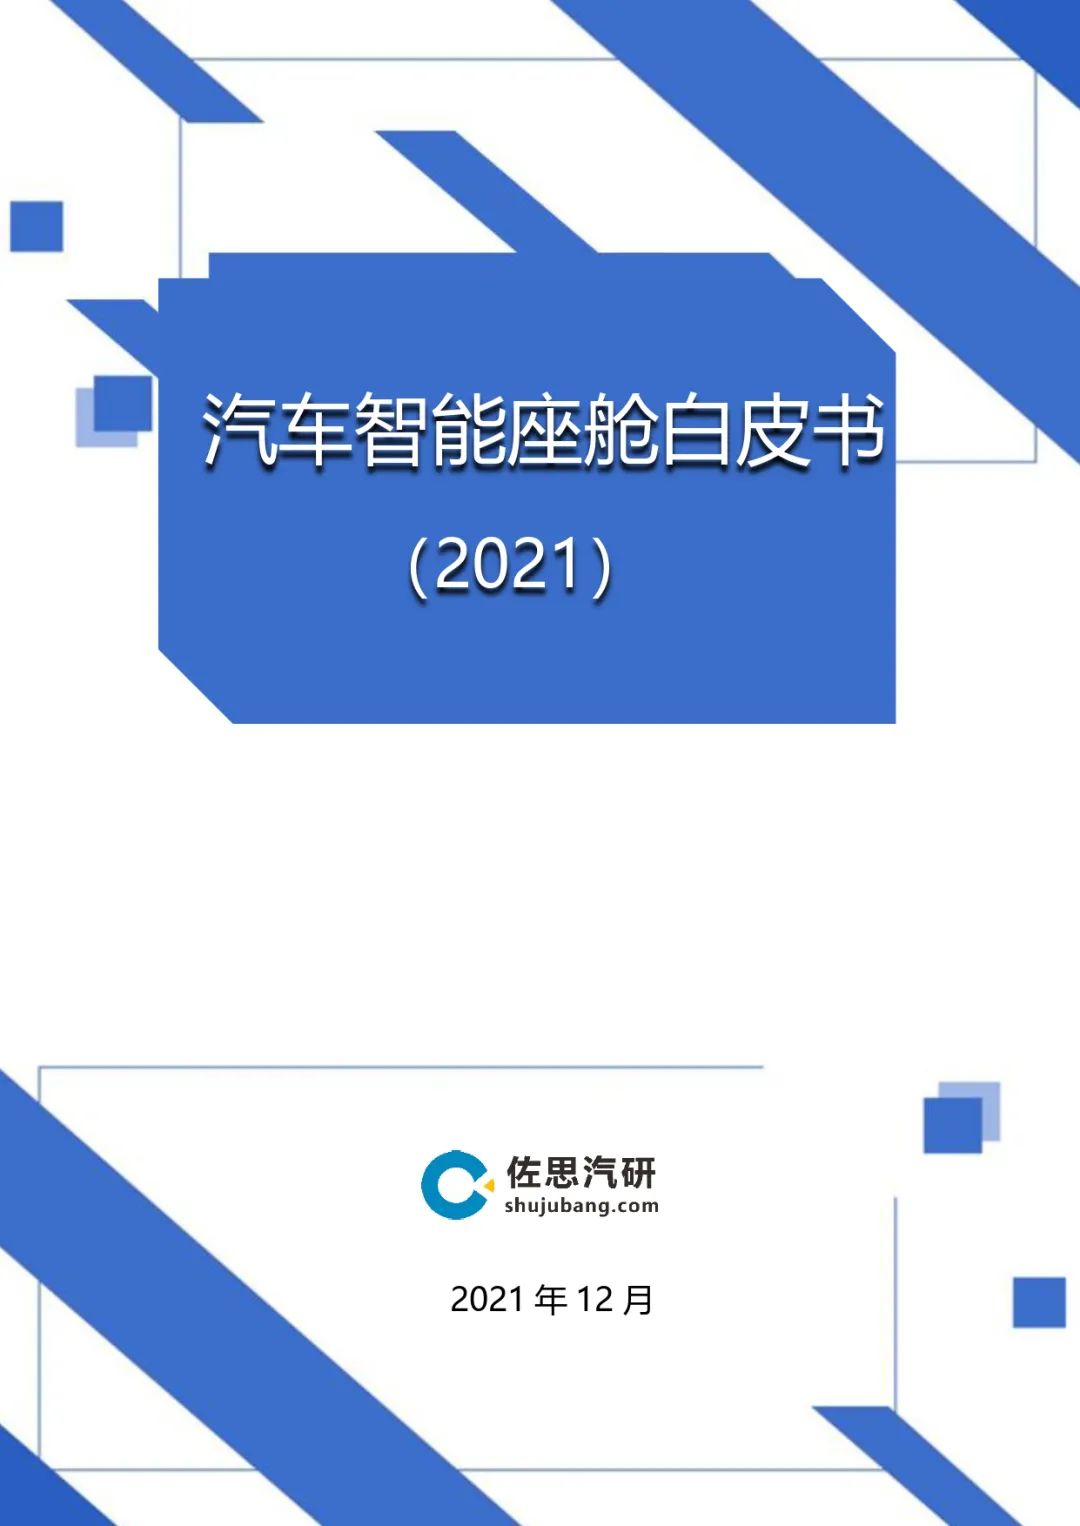 报告丨《汽车智能座舱白皮书（2021）》免费下载